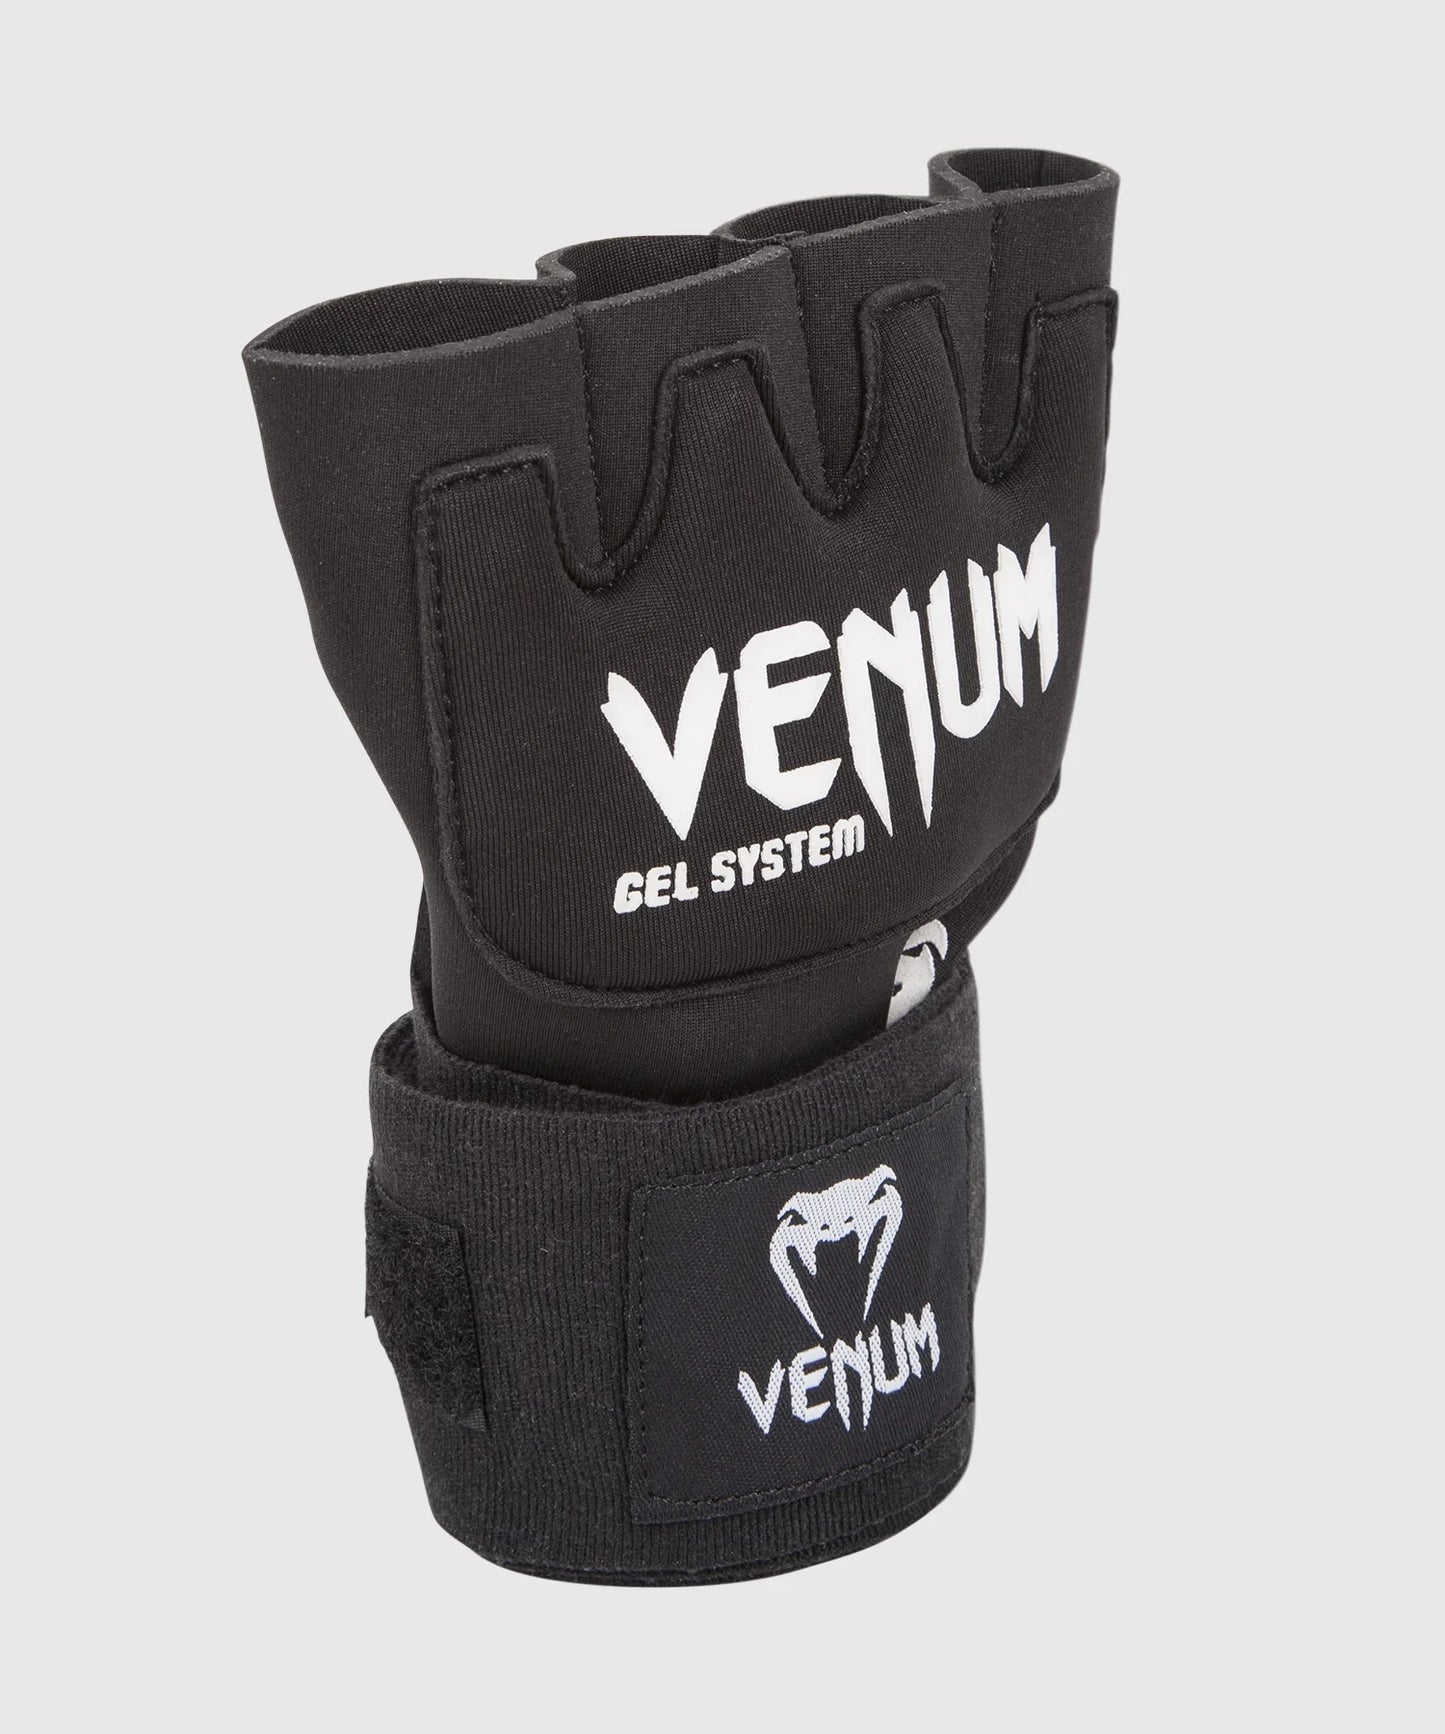 Venum Gel Kontact Handschuh Wraps - Schwarz